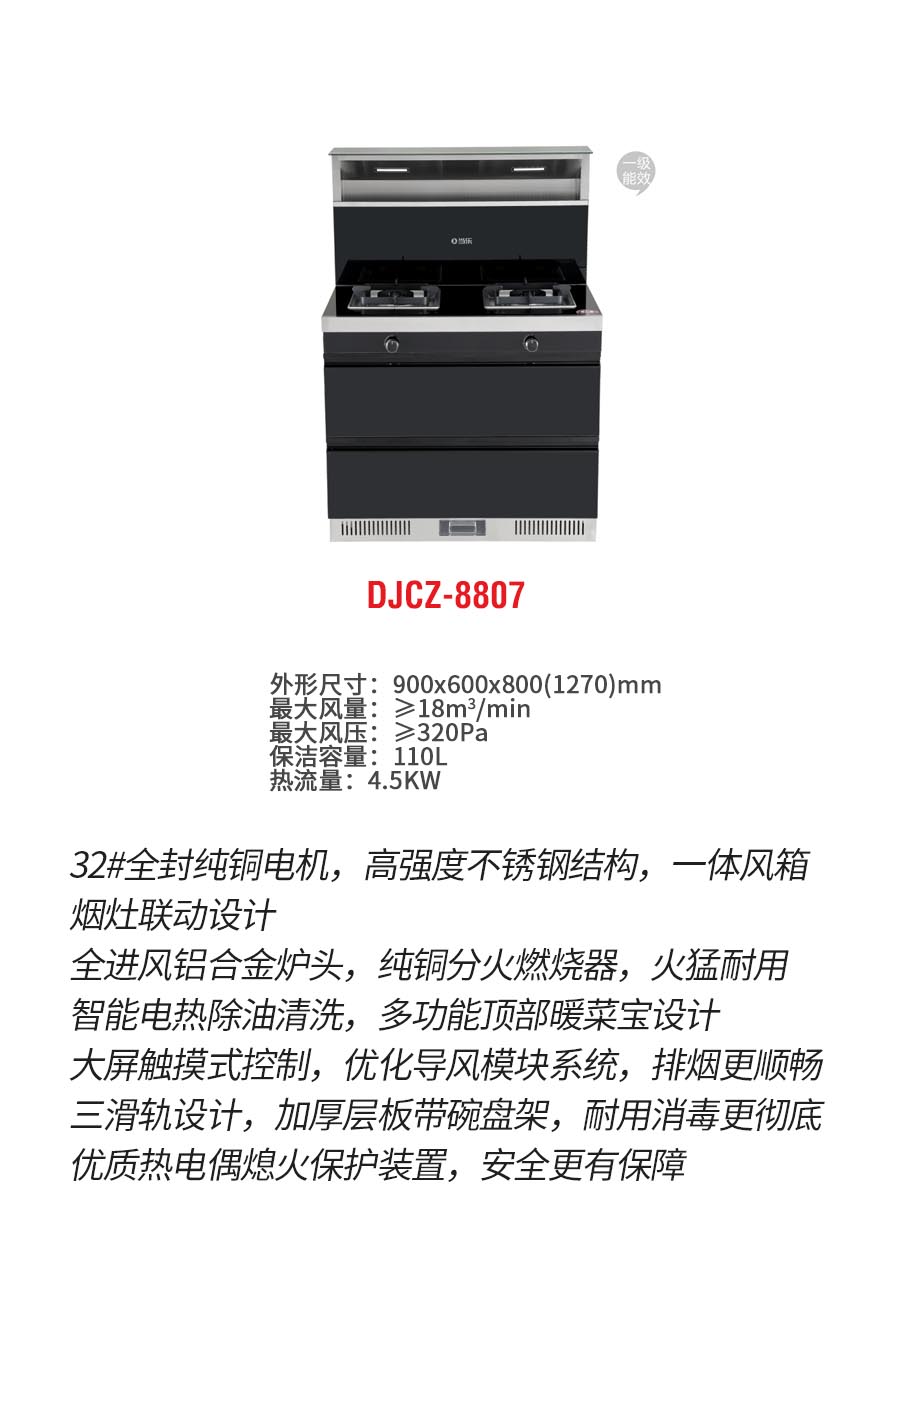 DJCZ-8807b.jpg